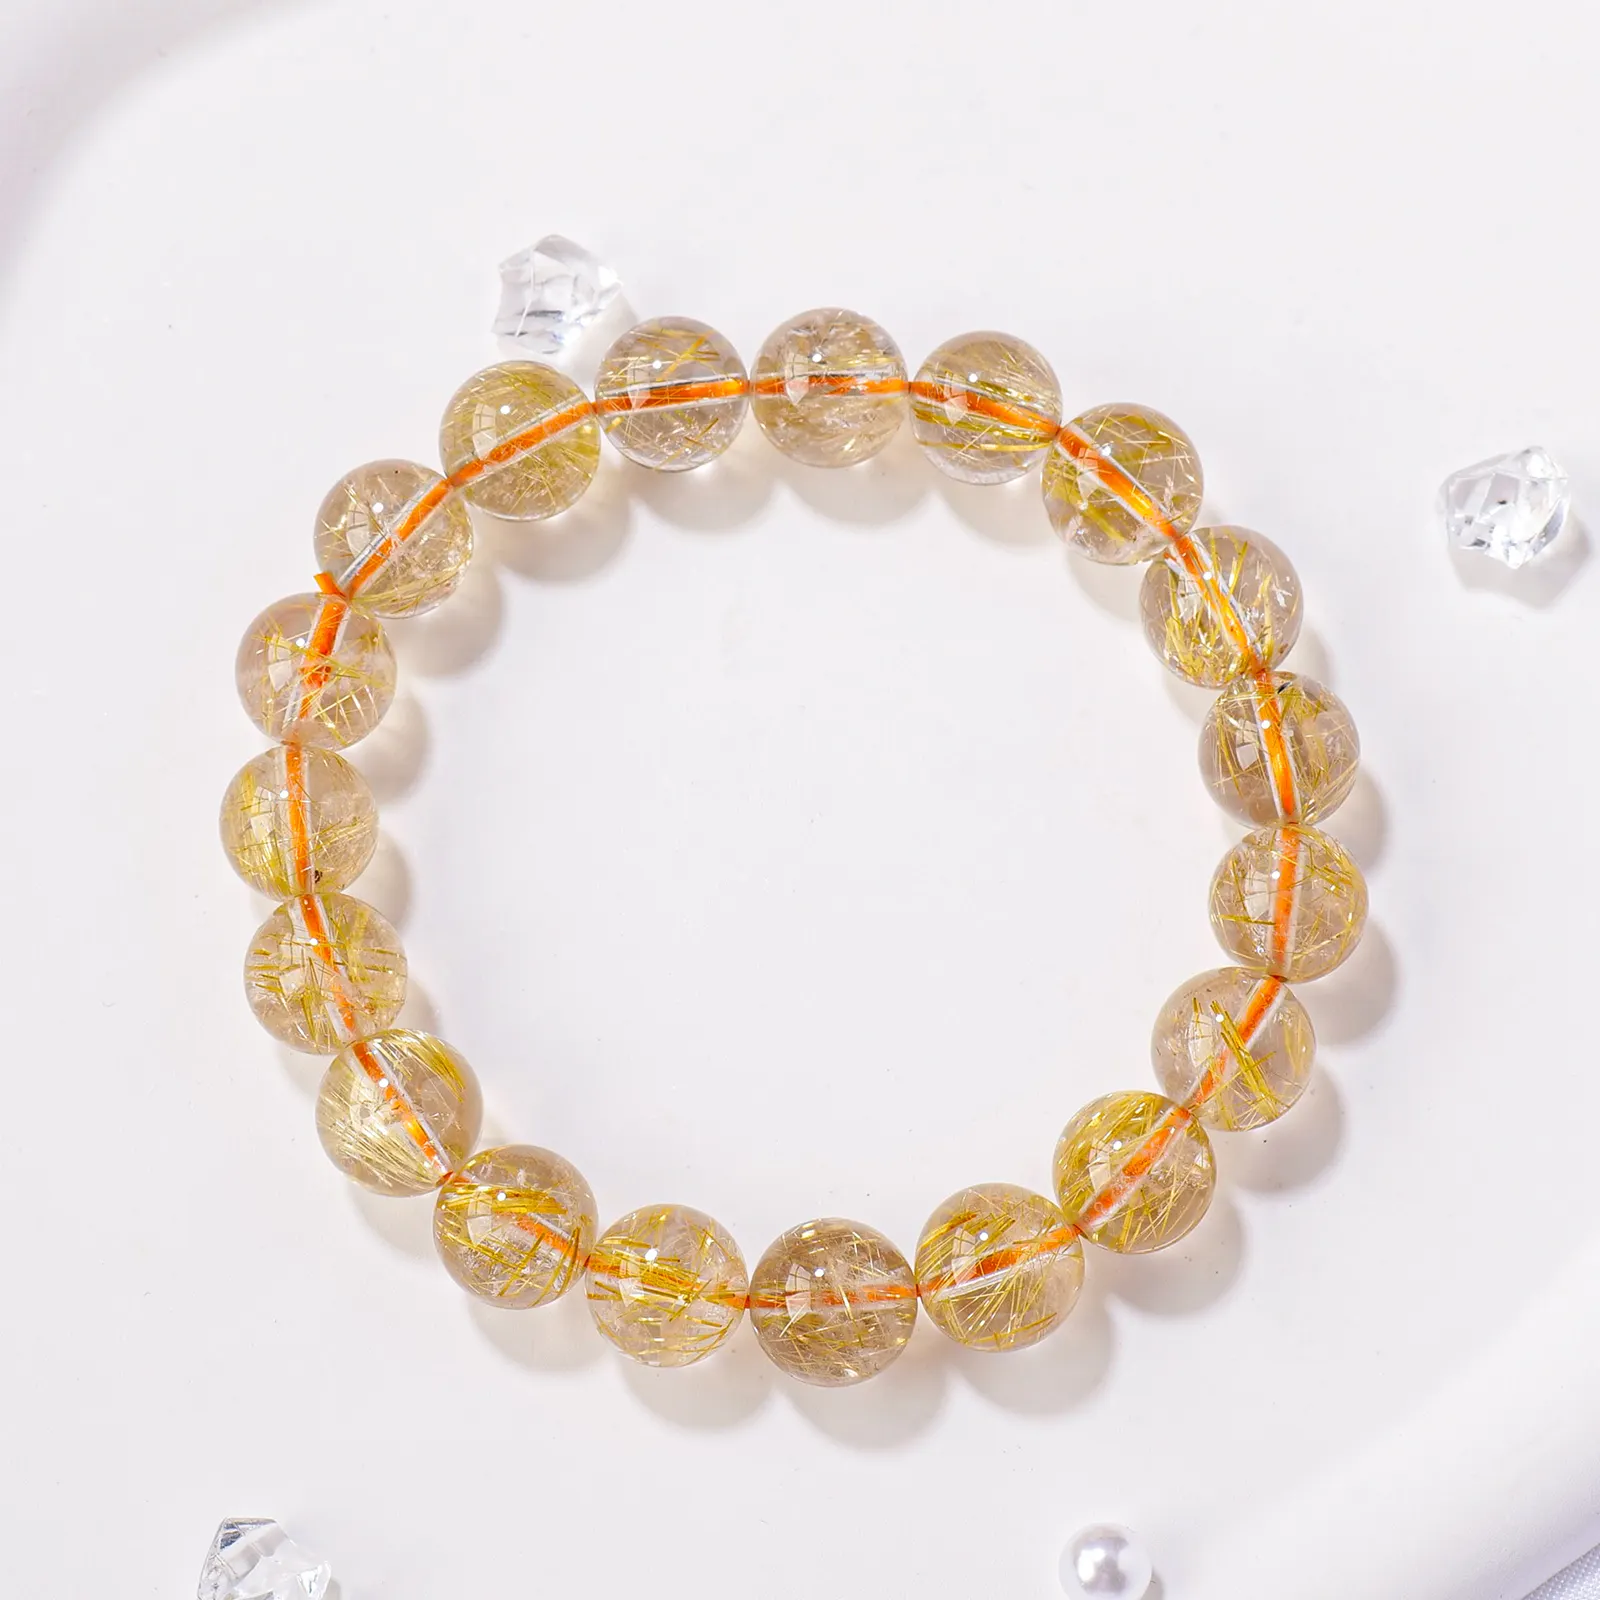 Commercio all'ingrosso di cristallo naturale guarigione spirituale di alta qualità oro rutilato quarzo braccialetto di cristallo artigianato gioielli